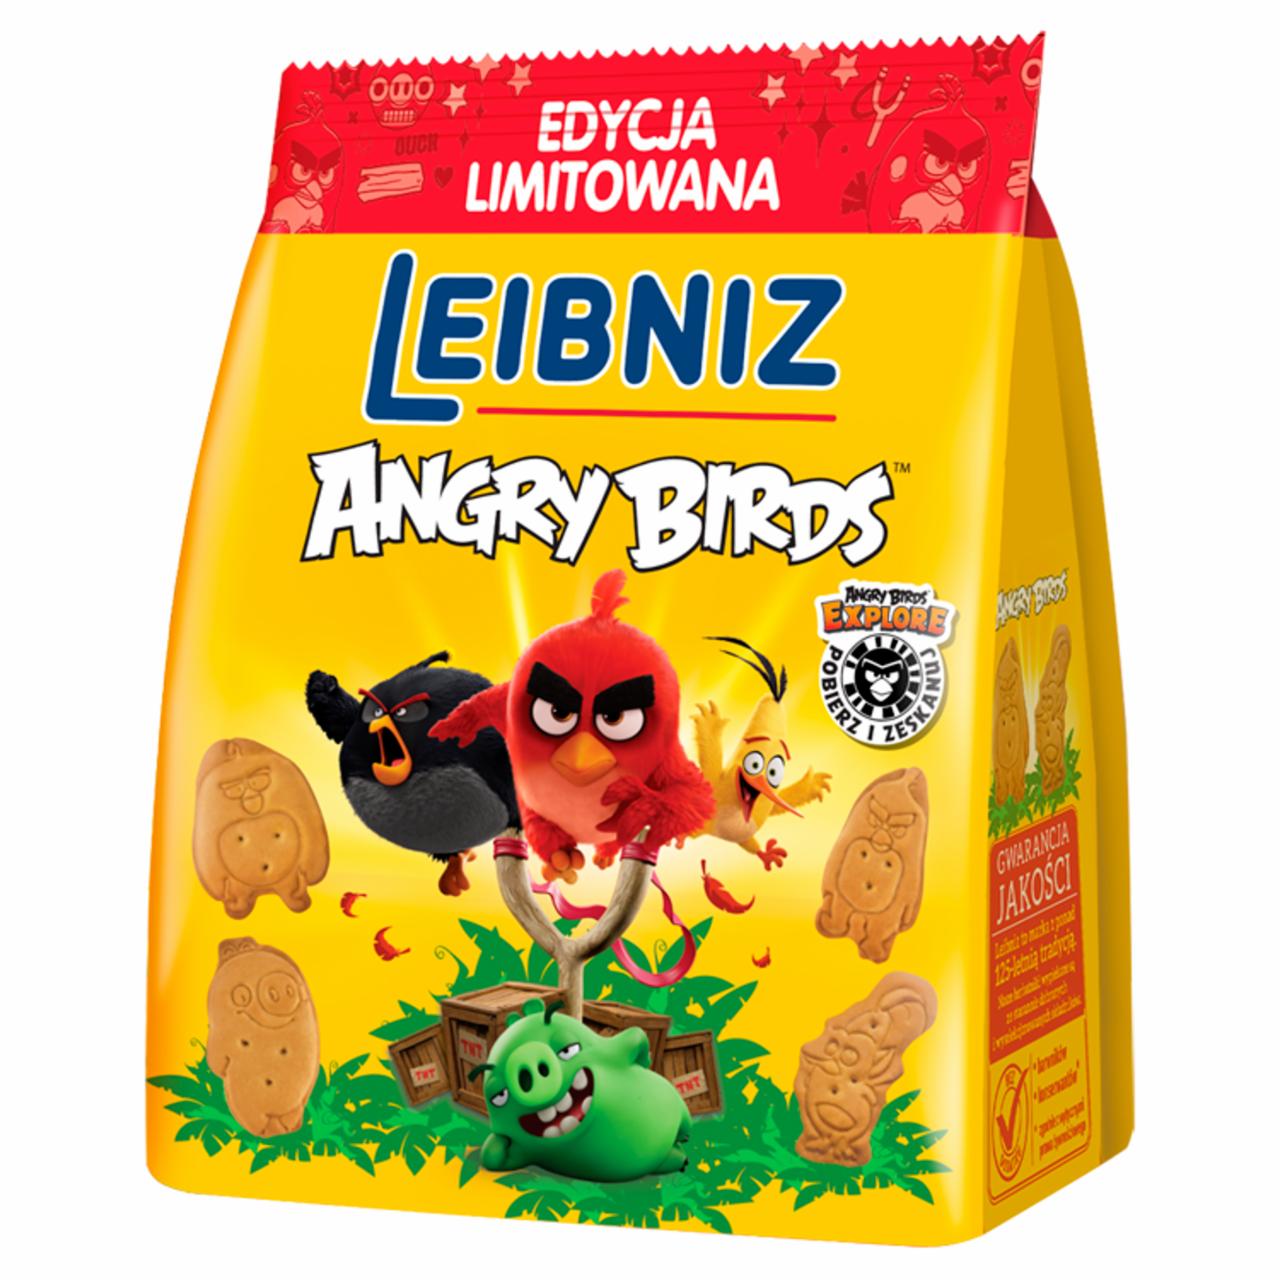 Zdjęcia - Leibniz Angry Birds Herbatniki maślane 100 g